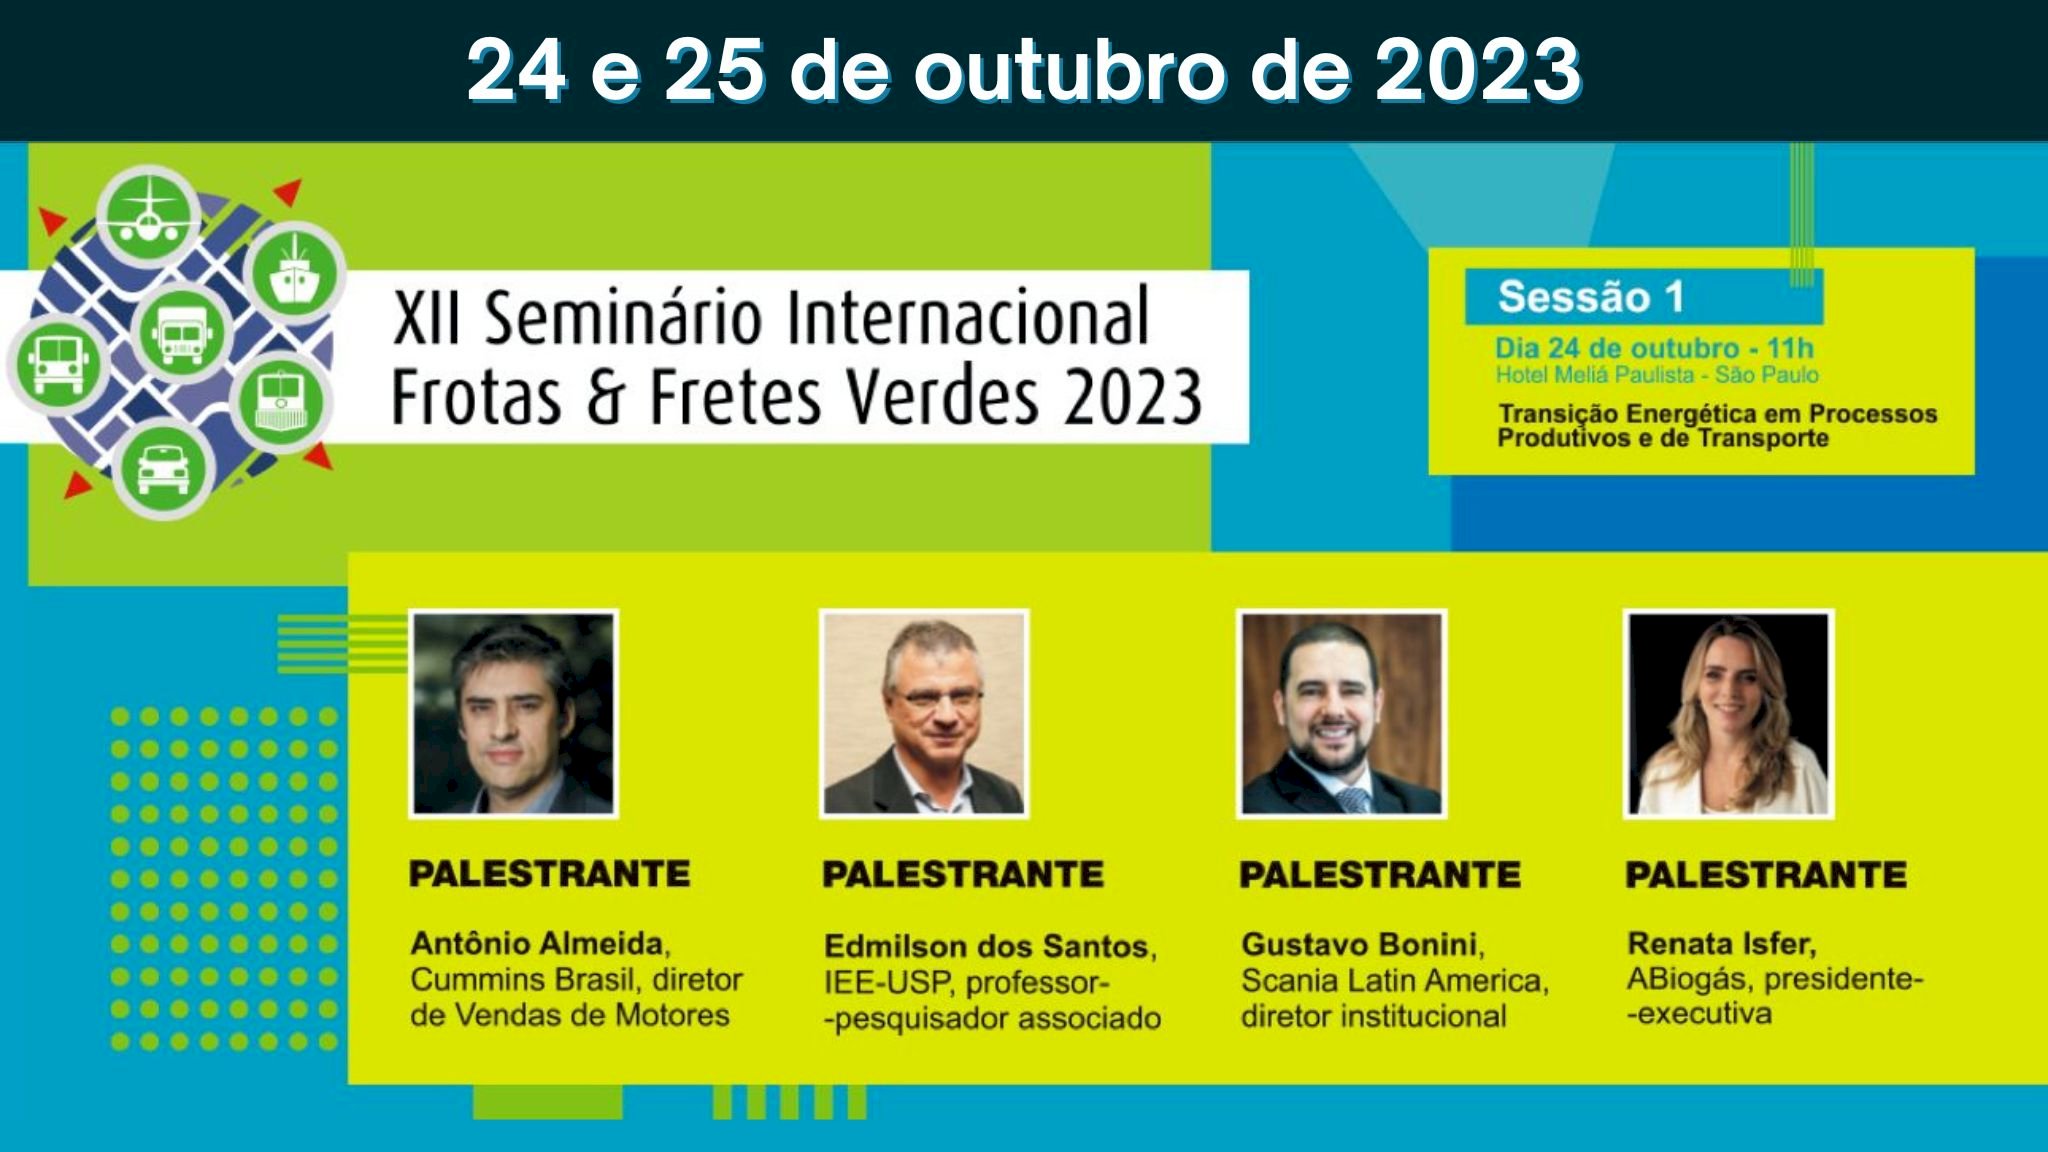 XII Seminário Internacional Frotas & Fretes Verdes 2023